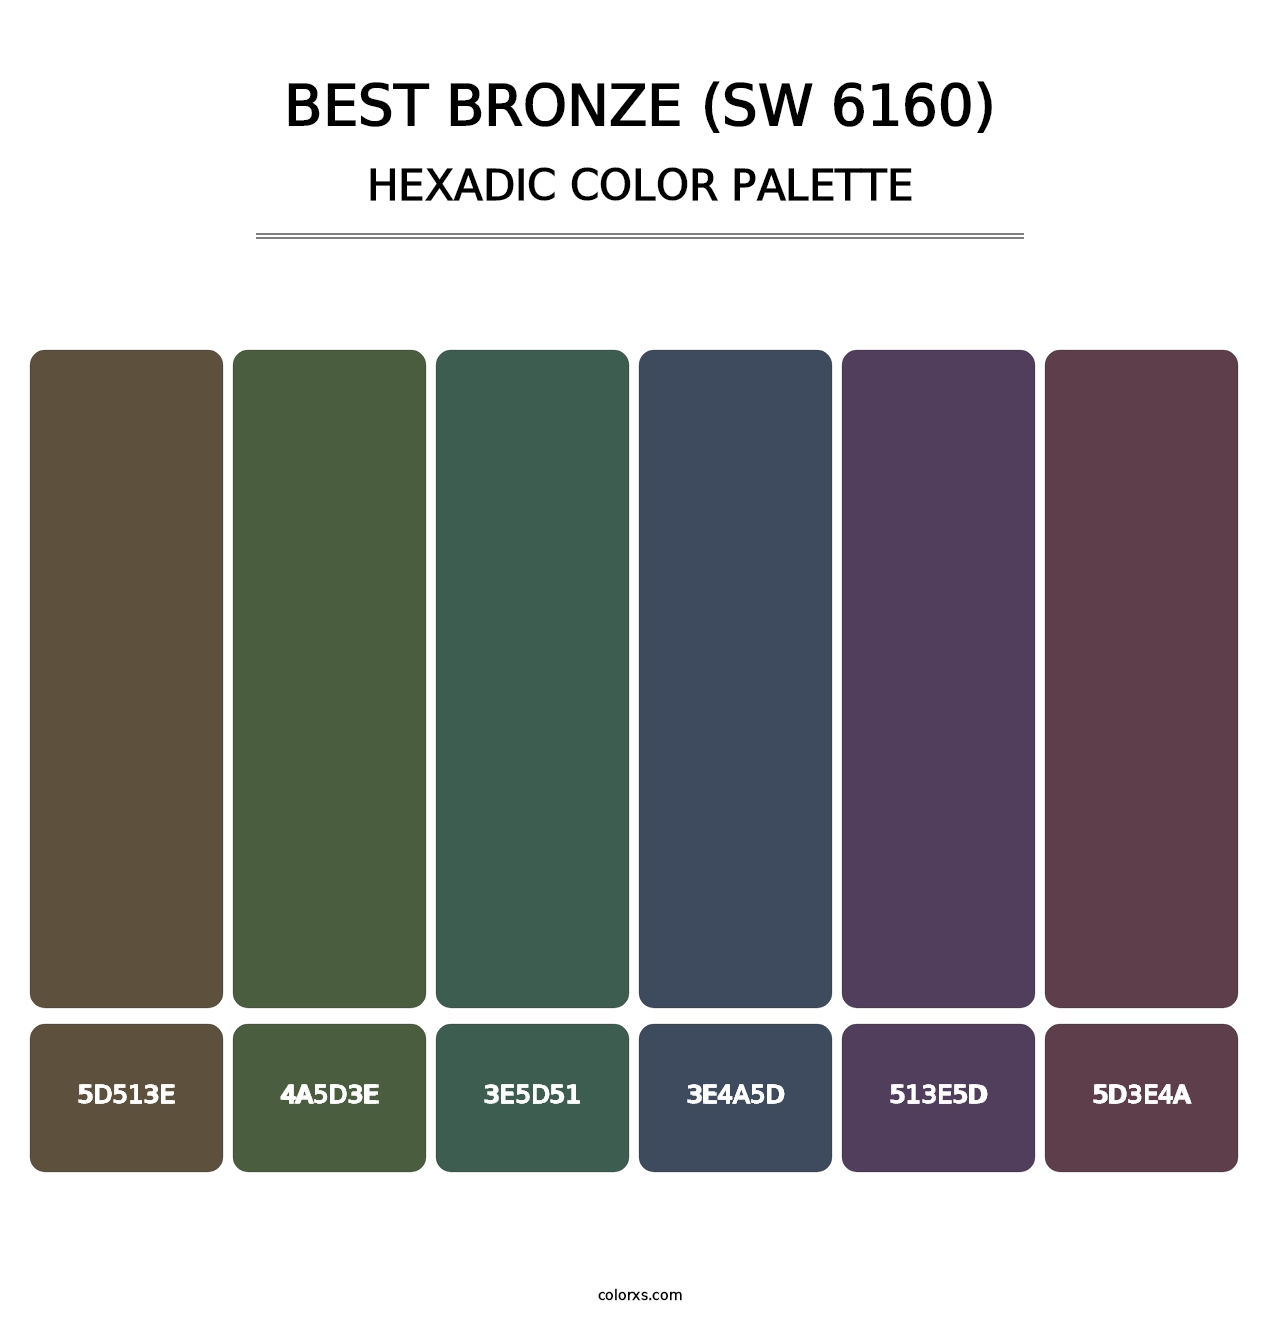 Best Bronze (SW 6160) - Hexadic Color Palette